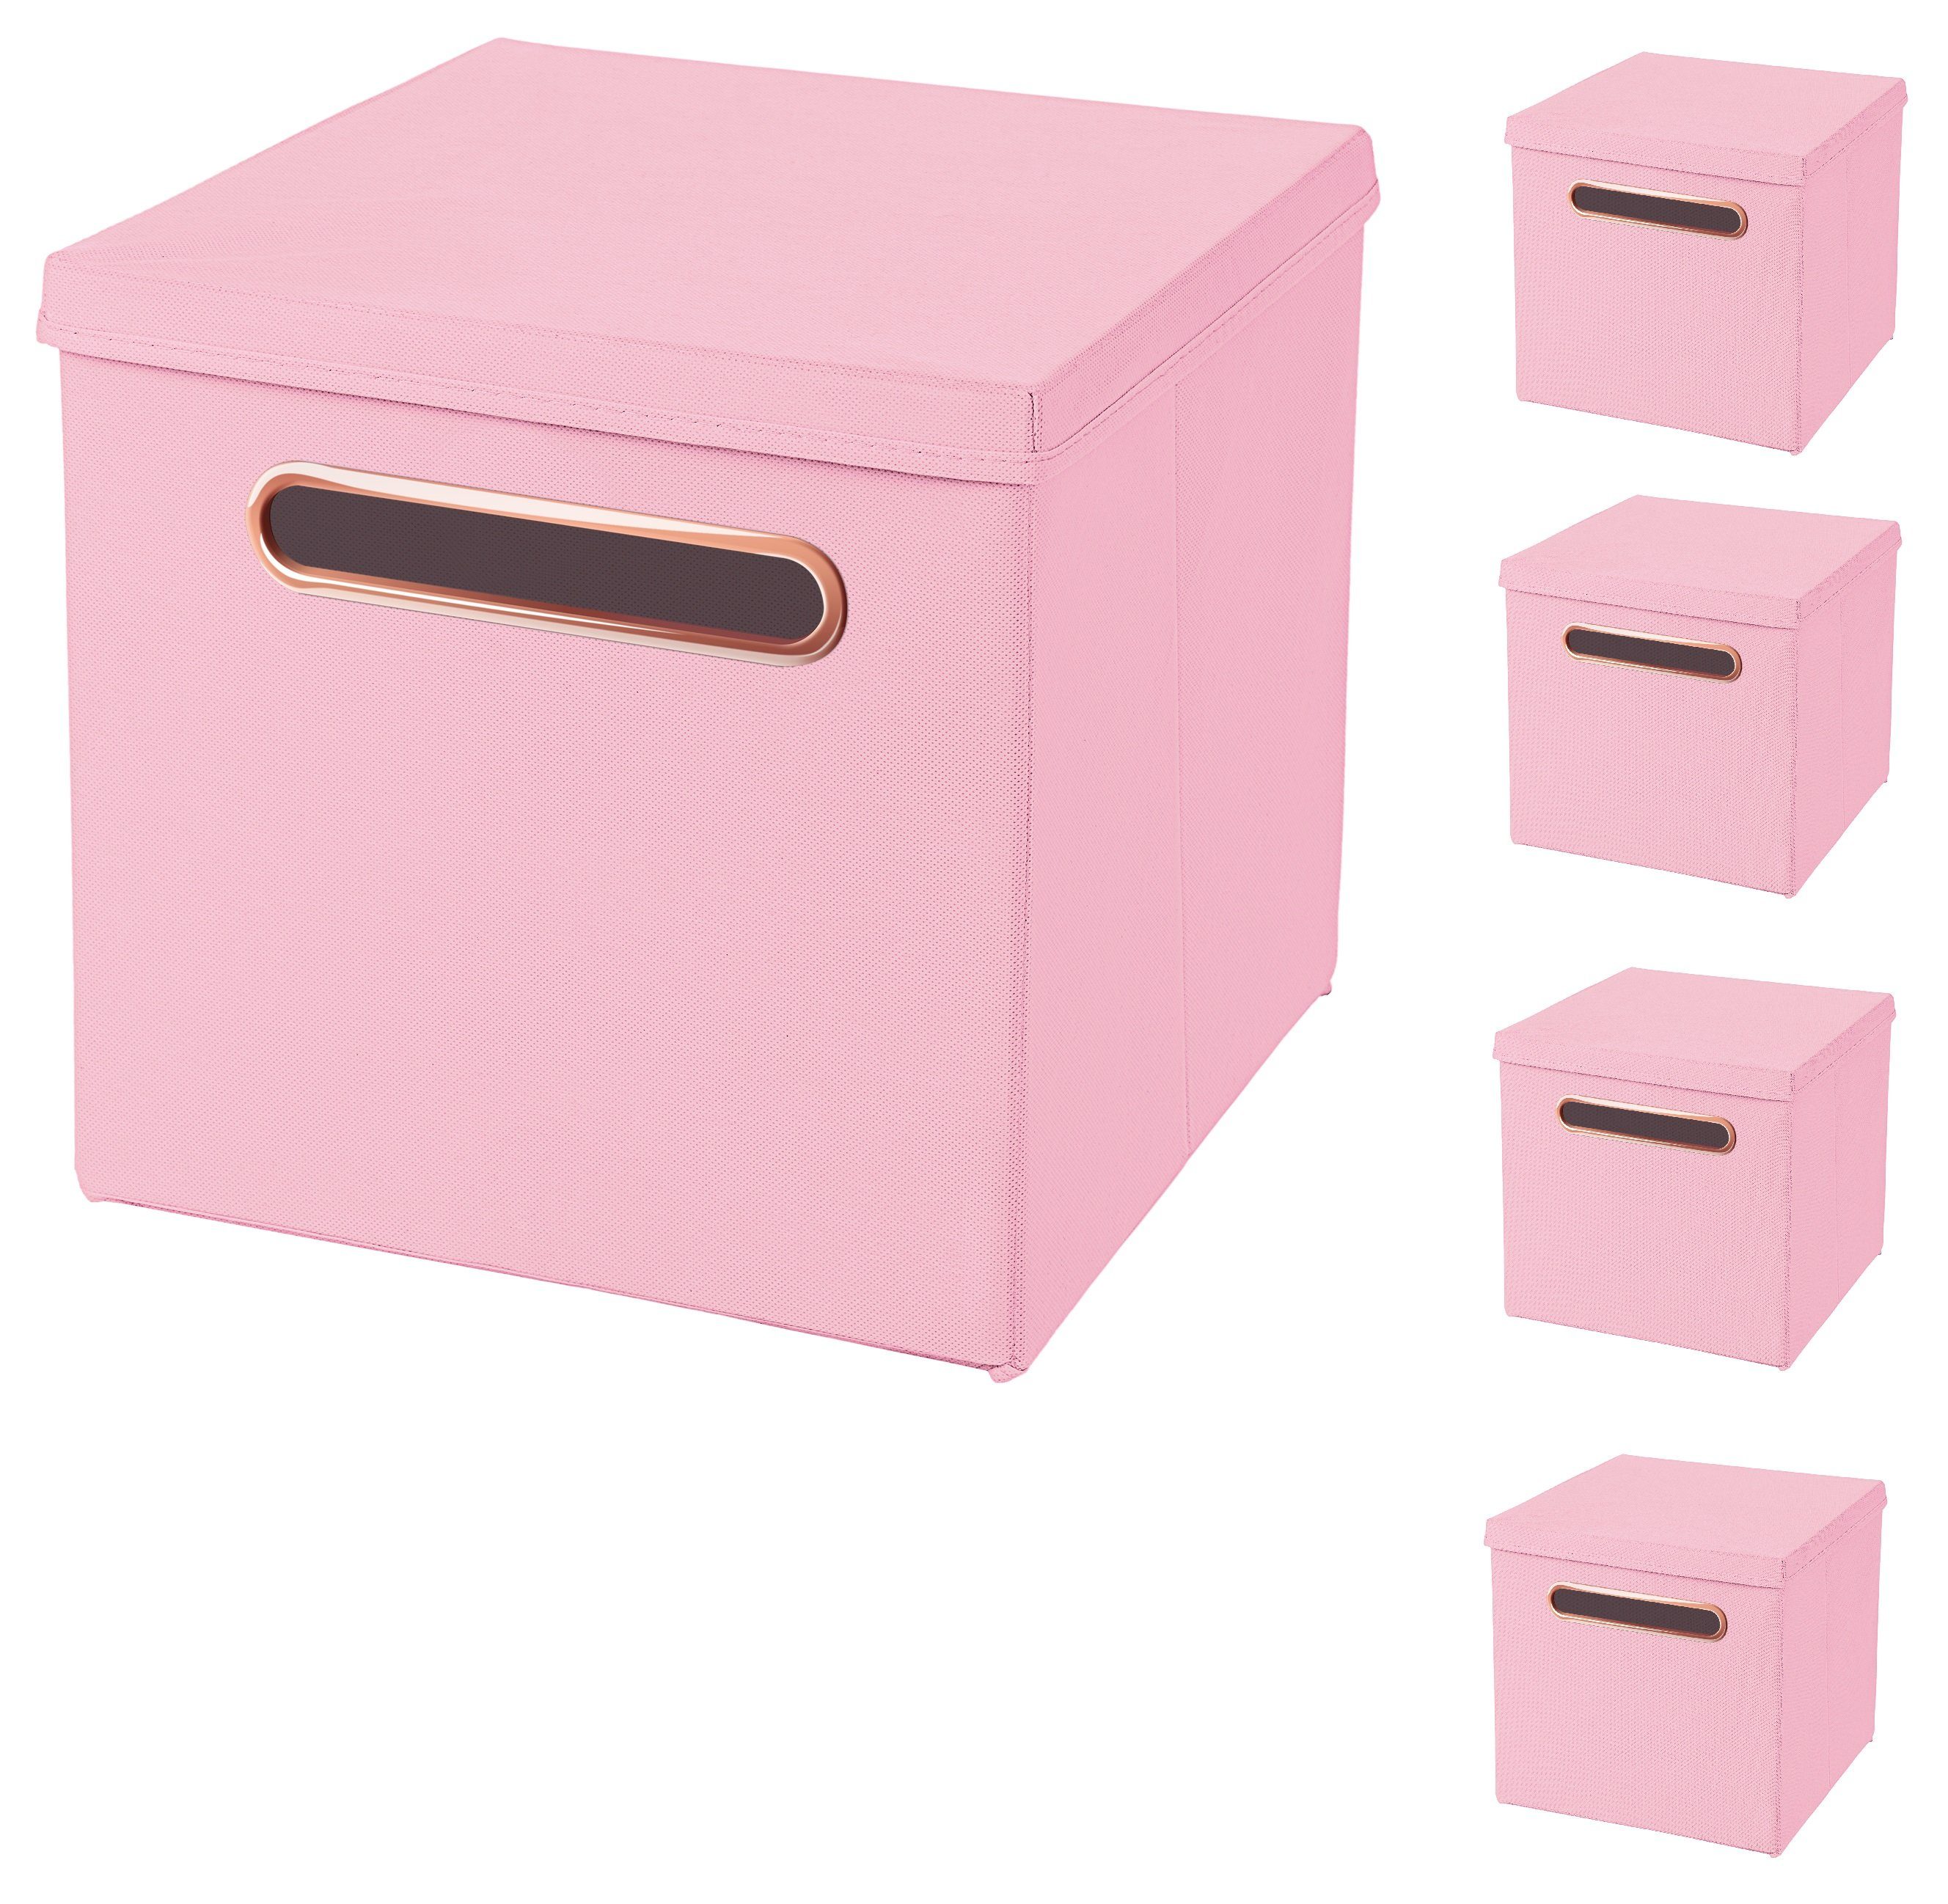 StickandShine Faltbox 5 Stück 32,5 x 32,5 x 32,5 cm Faltbox mit Deckel  Rosegold Griff Stoffbox Aufbewahrungsbox 5er SET in verschiedenen Farben  Luxus Faltkiste